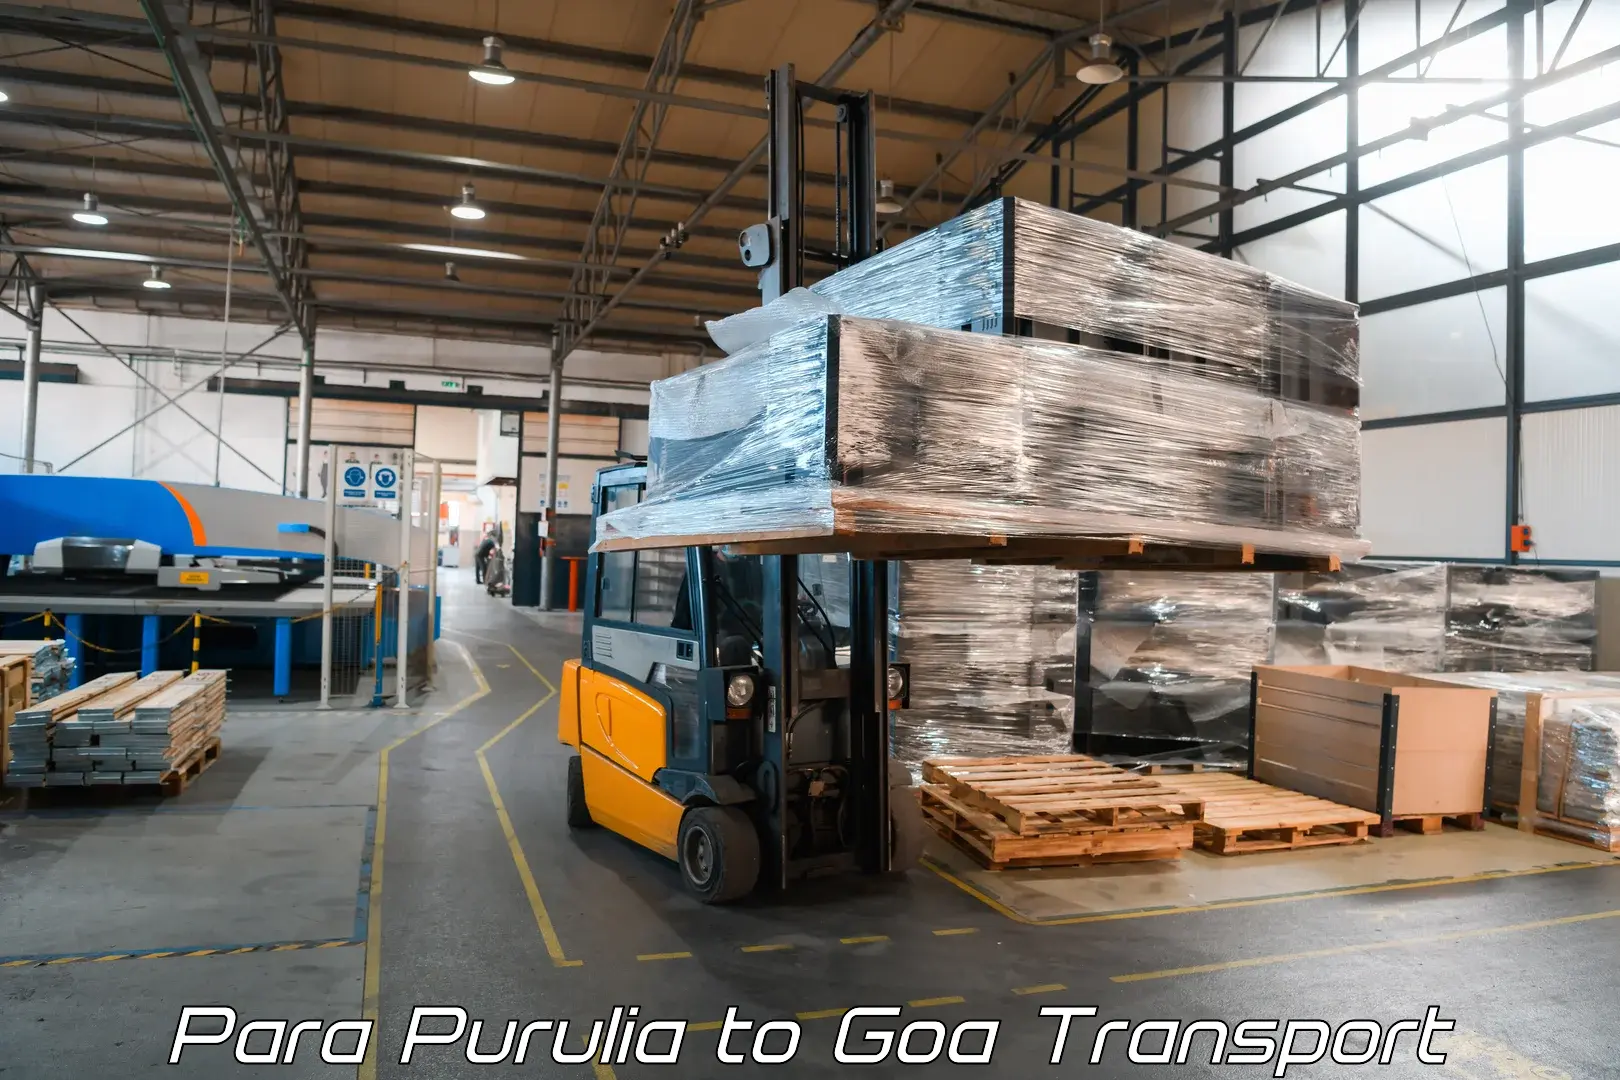 International cargo transportation services Para Purulia to Vasco da Gama